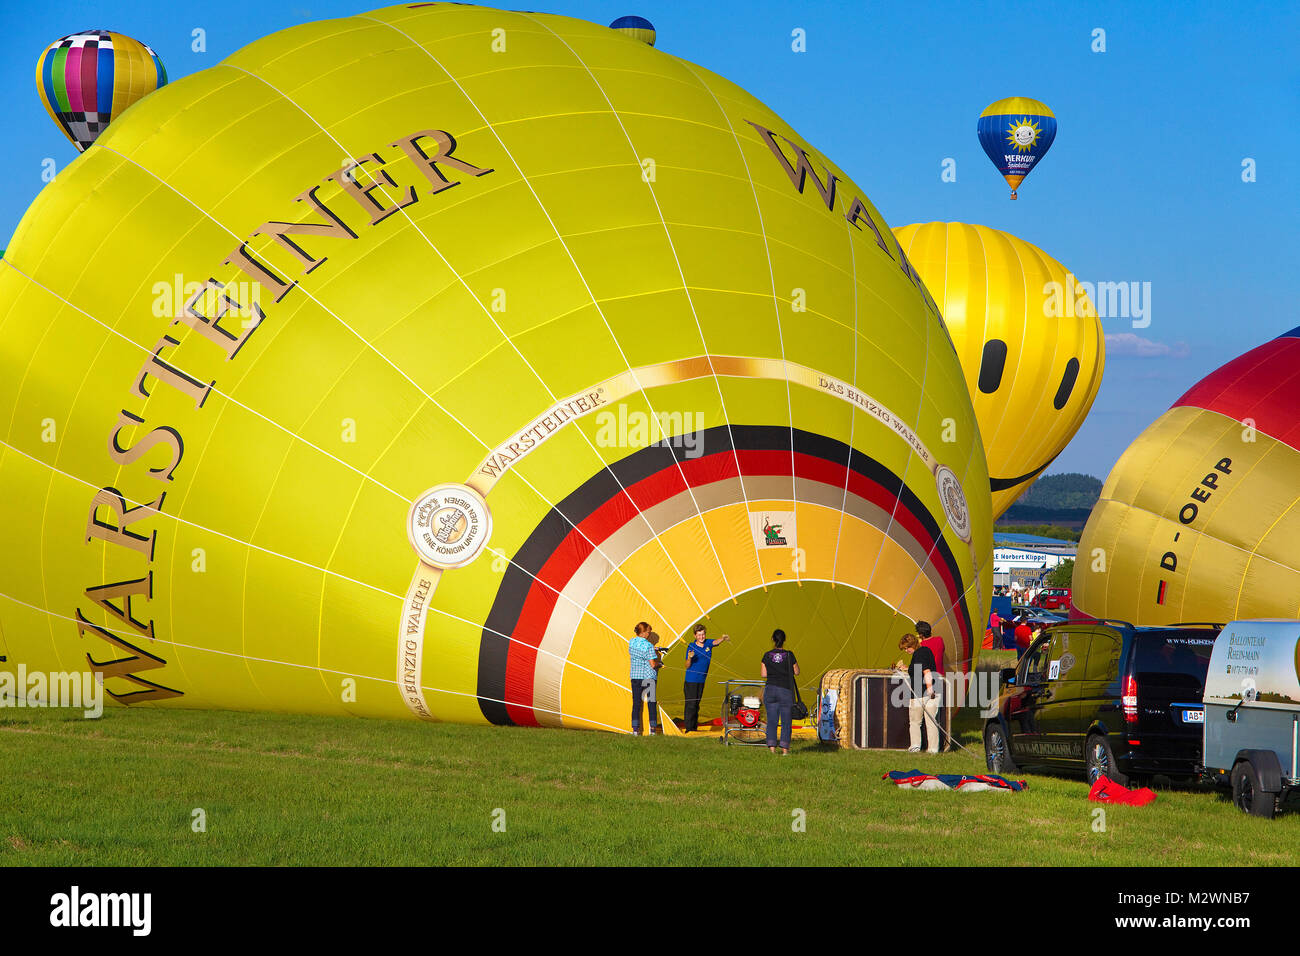 Brûleur à propane chauffe l'air, montgolfière montgolfière Moselle, festival, Trier-Foehren Foehren, Rhénanie-Palatinat, Allemagne, Europe Banque D'Images